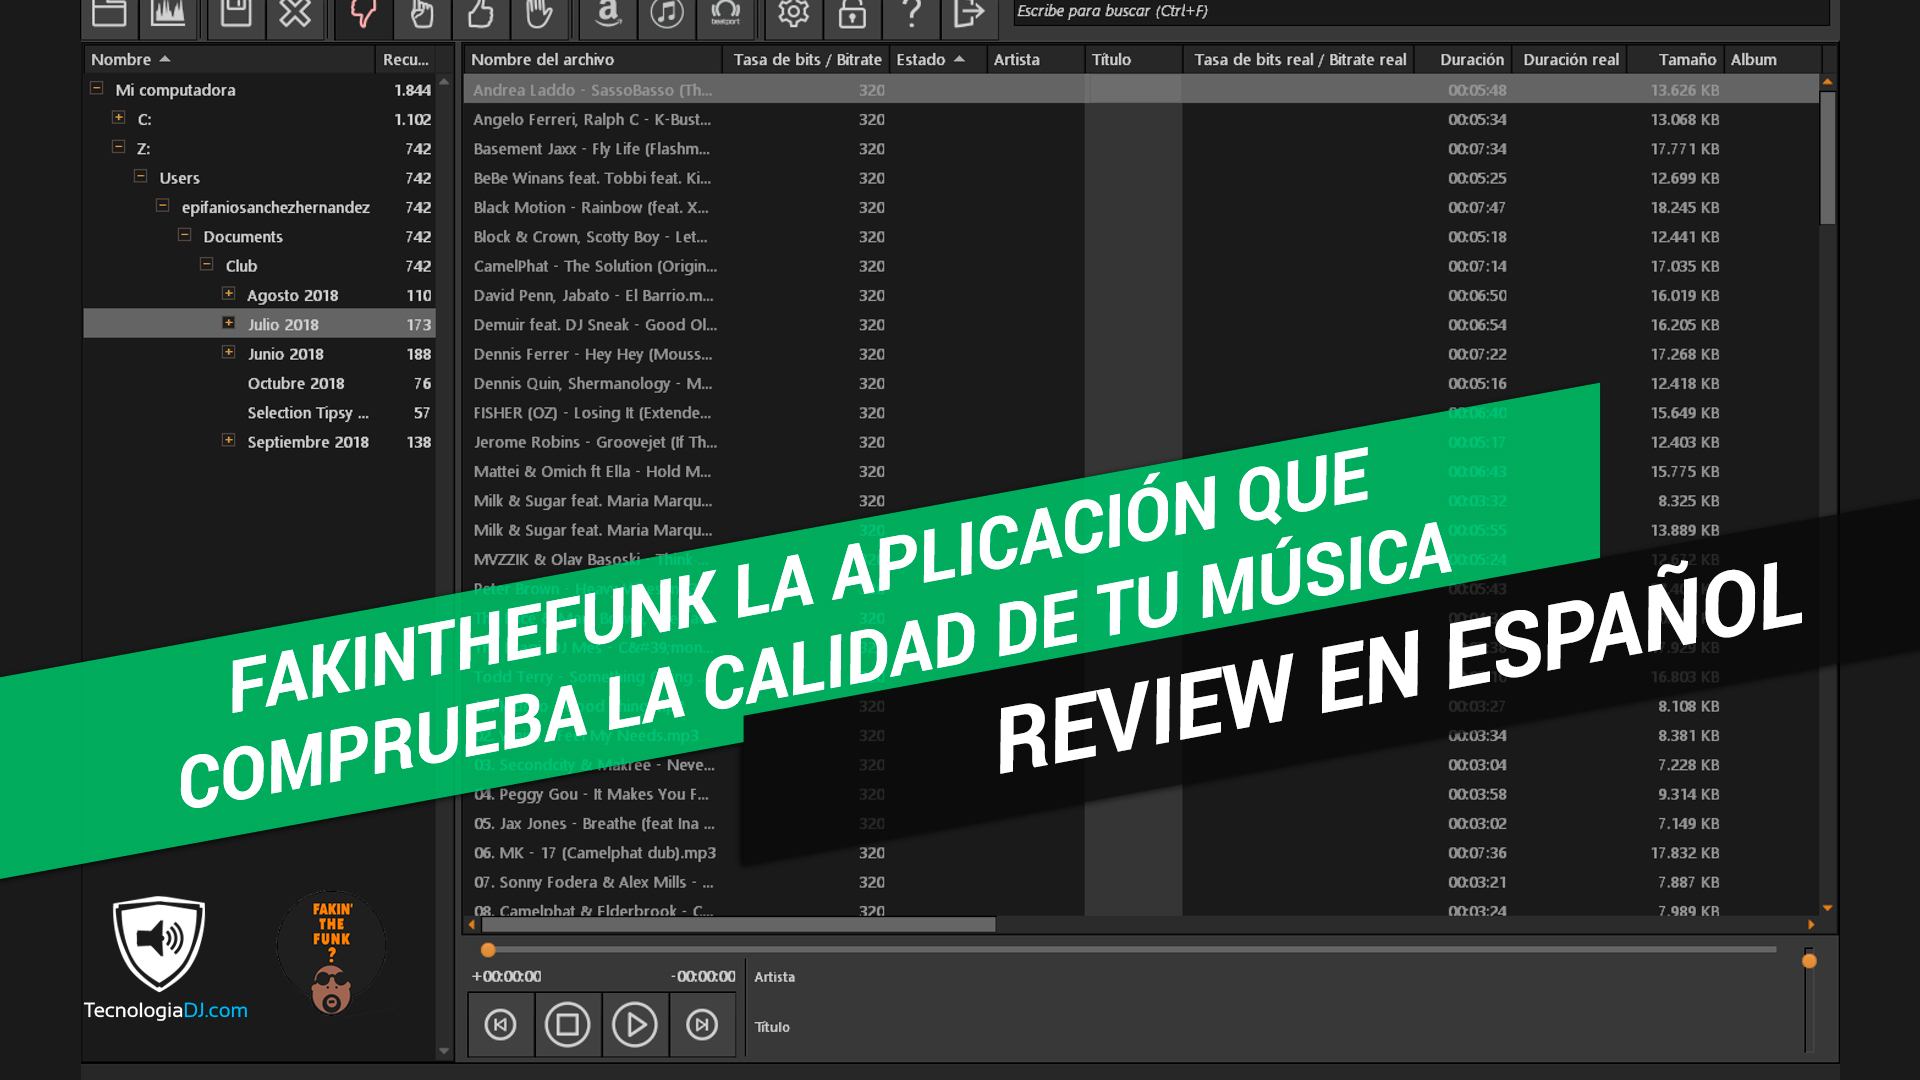 FakinTheFunk la aplicación que comprueba la calidad de tu música